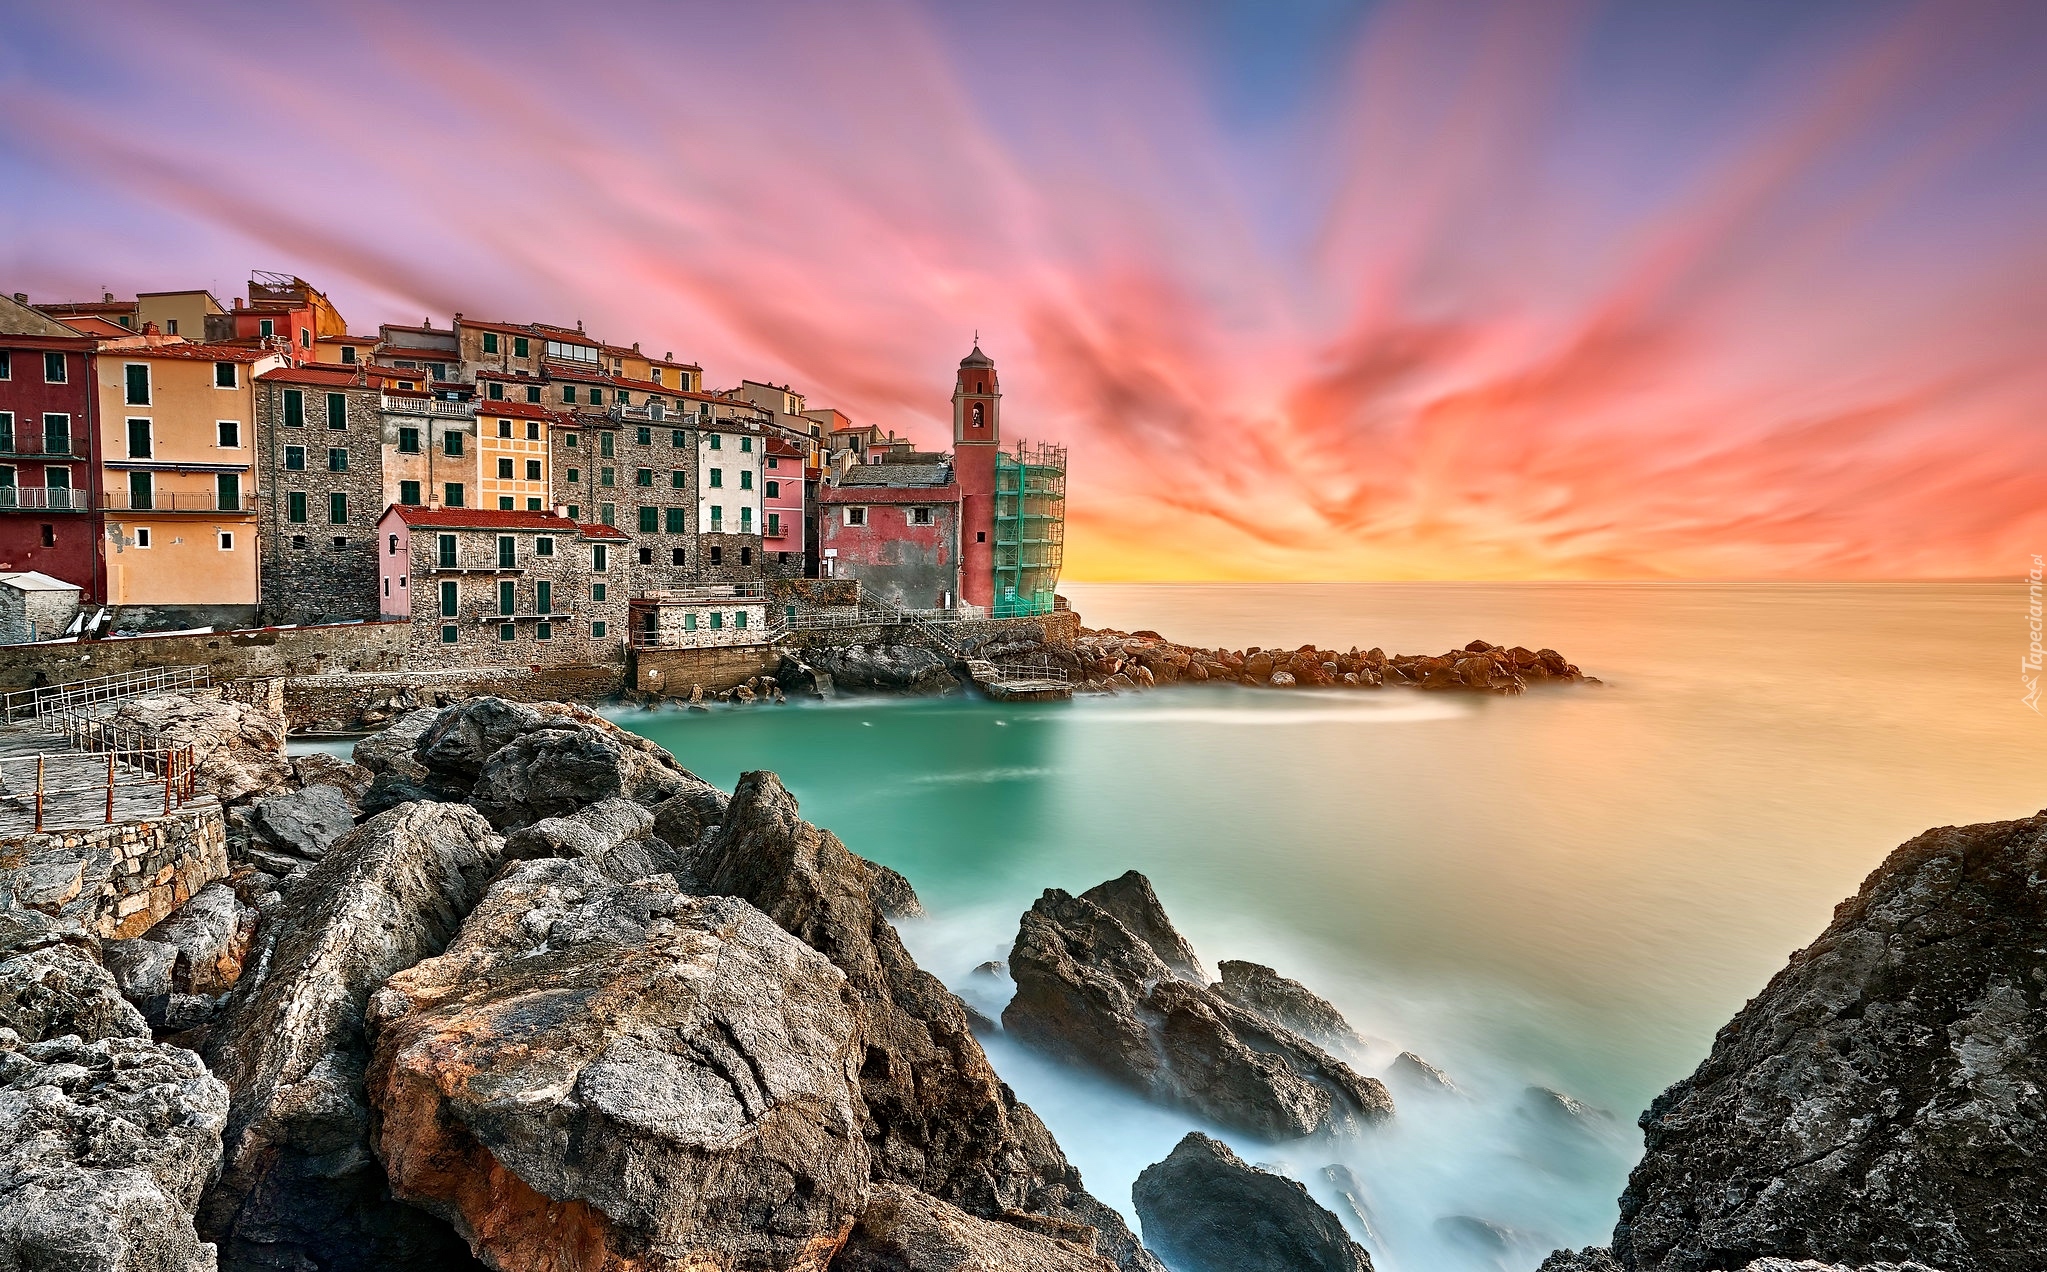 Morze Liguryjskie, Wybrzeże, Skały, Domy, Zachód słońca, Tellaro, Liguria, Włochy